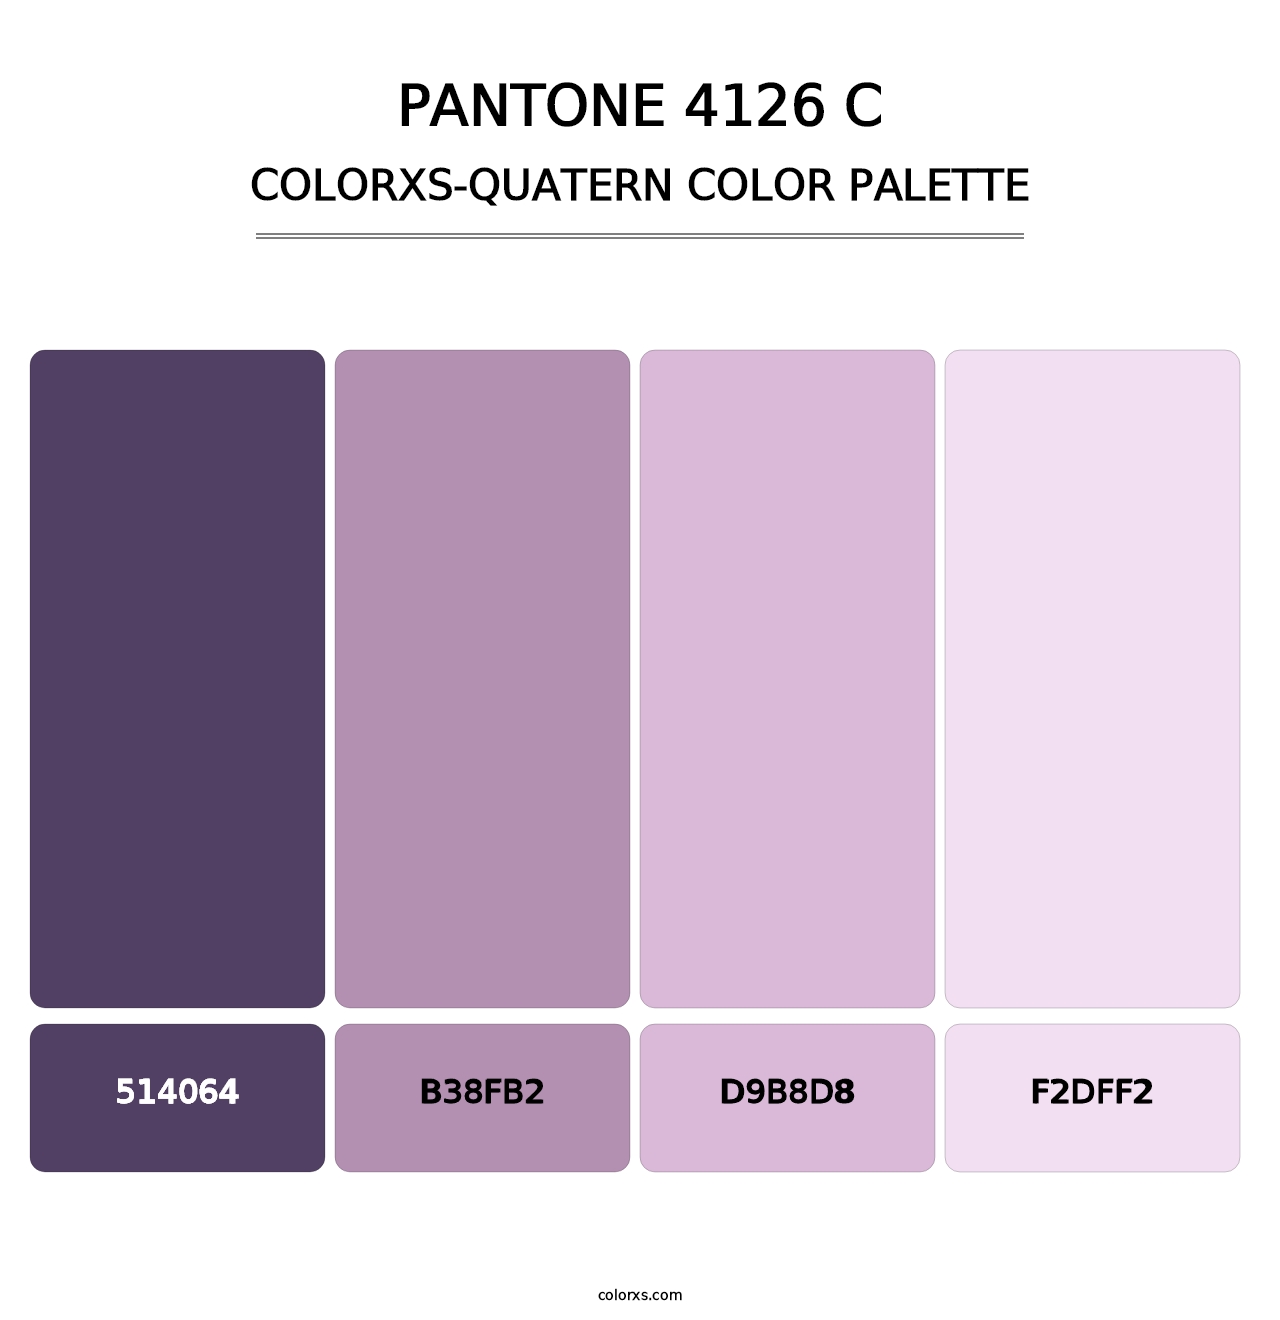 PANTONE 4126 C - Colorxs Quatern Palette